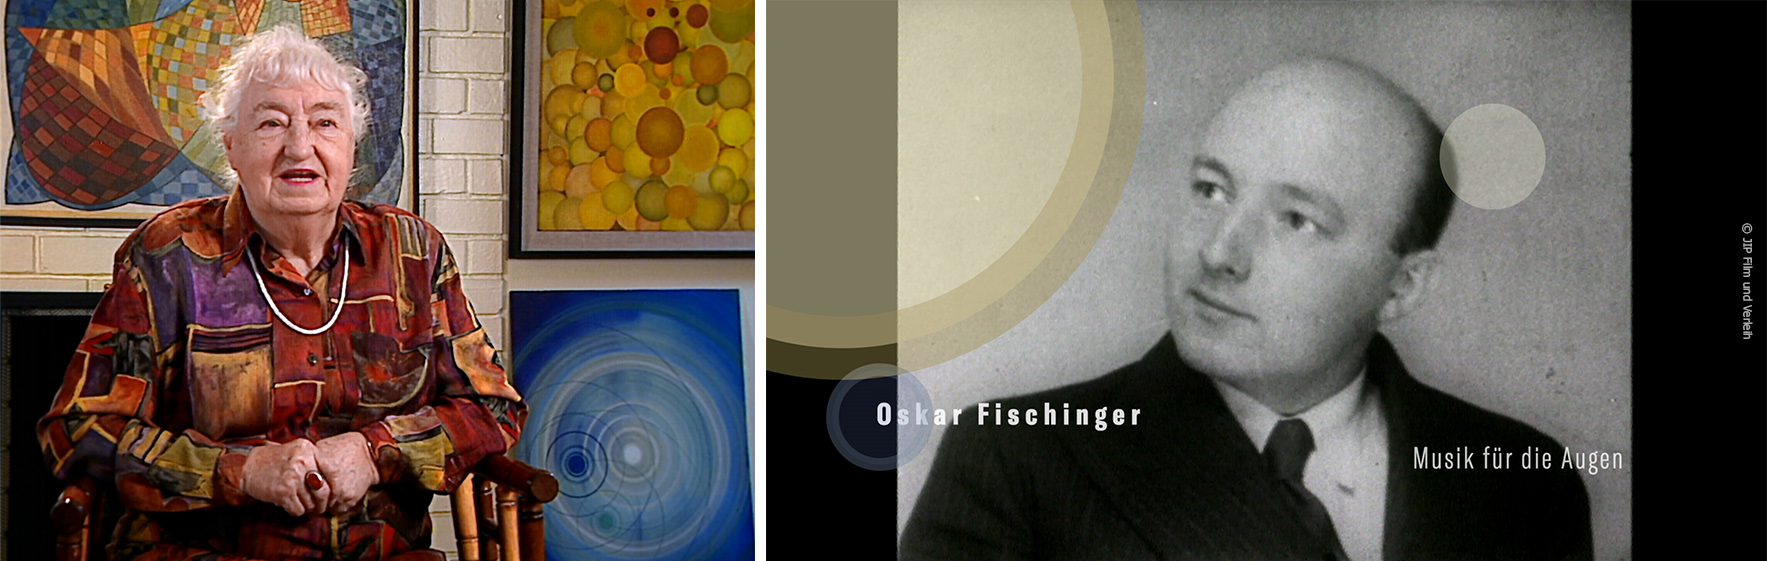 Bildcollage: Elfriede Fischinger Interview (links), Oskar Fischinger SW-Bild und Titel MUSIK FÜR DIE AUGEN (r.) Filmstills zur Verfügung gestellt von JIP Film & Verleih